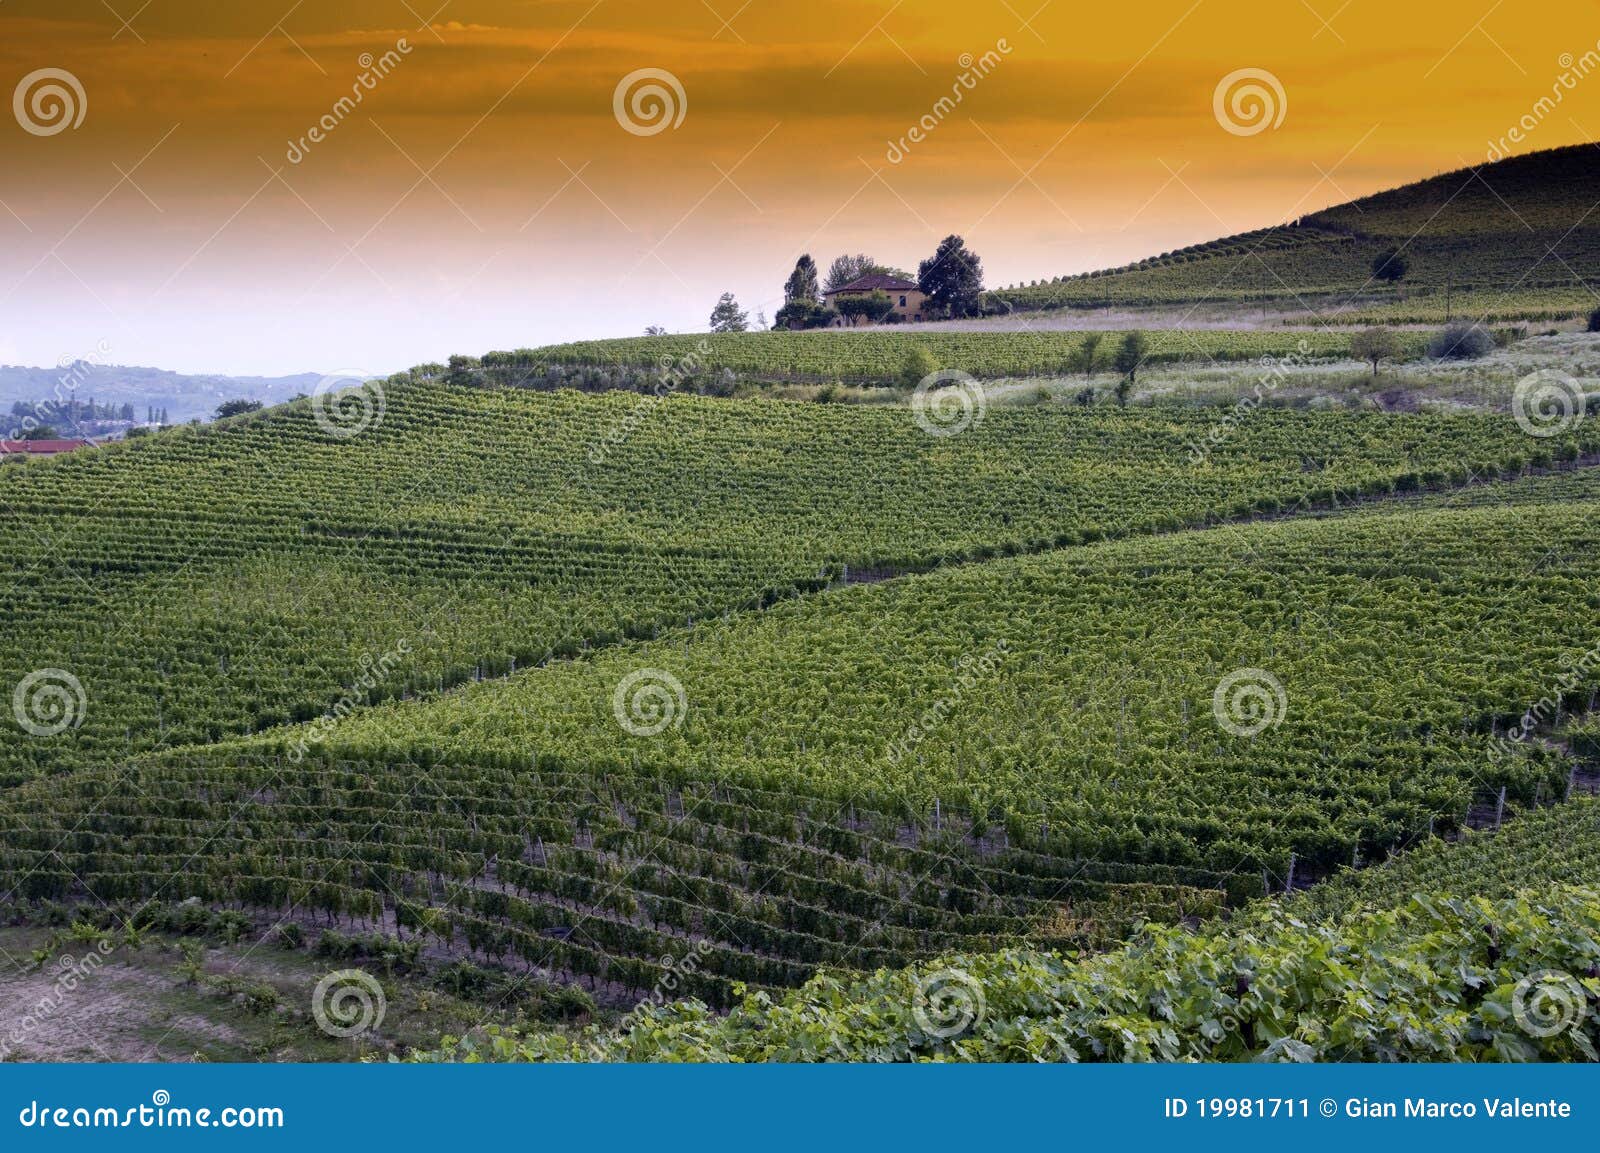 picturesque vineyard